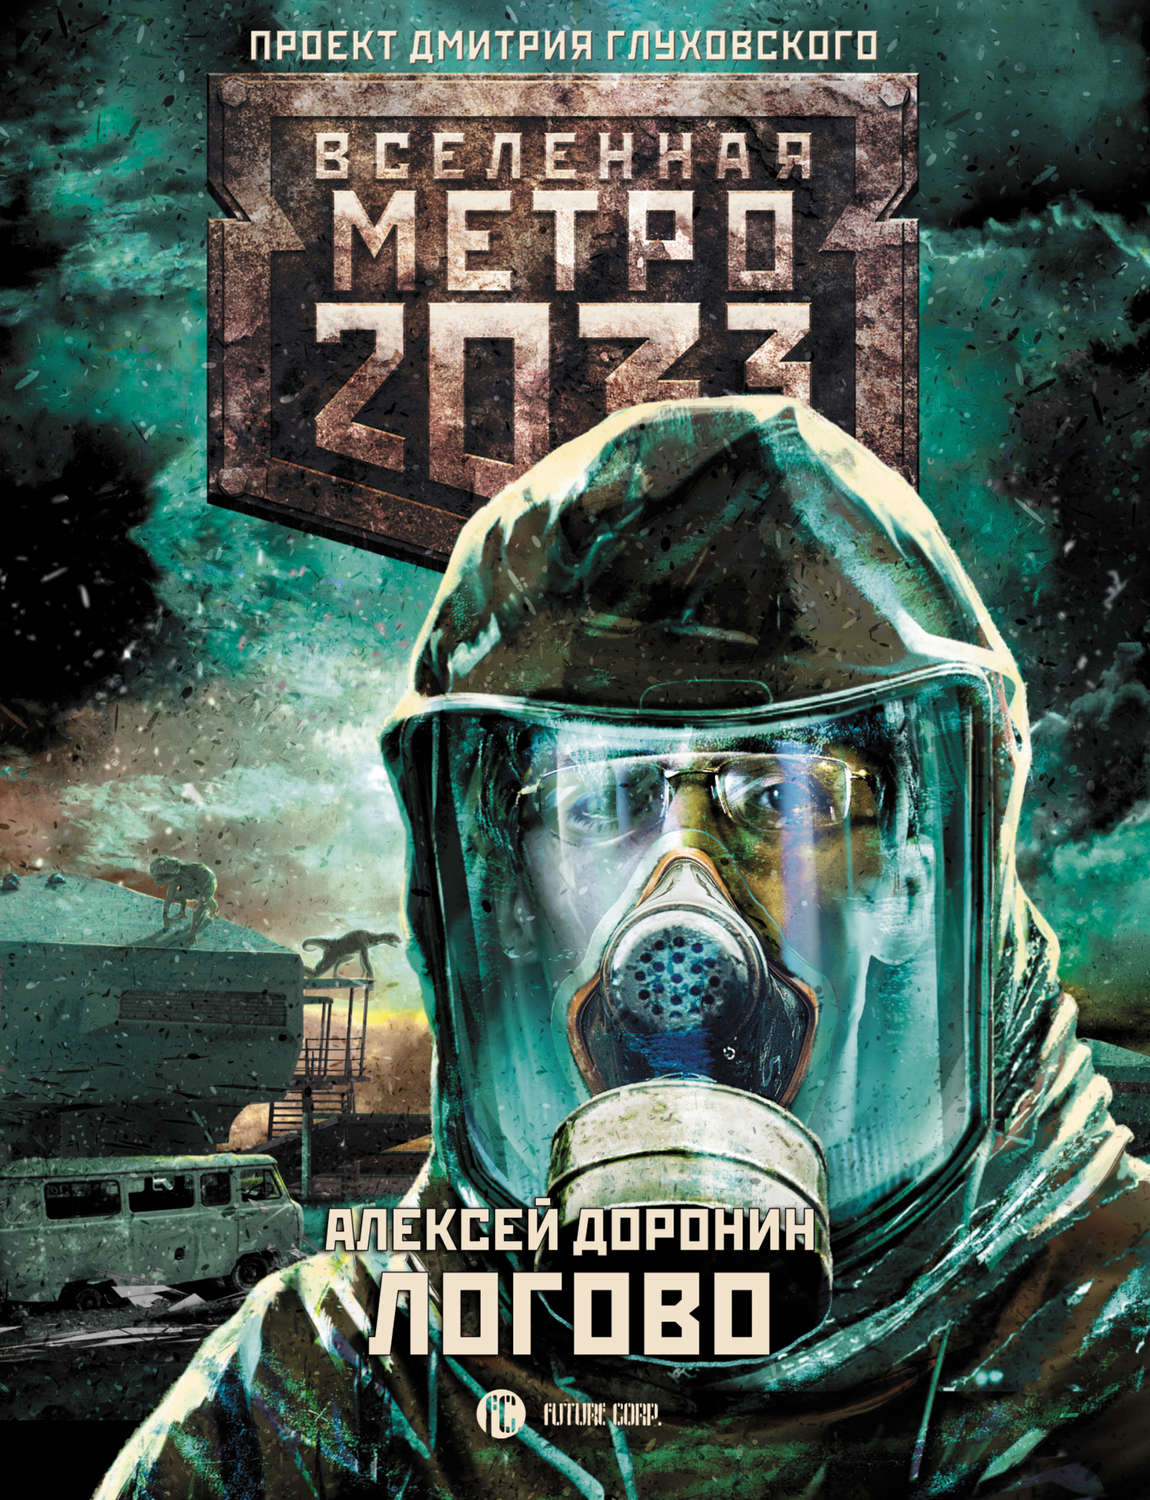 Метро 2033 книга полностью. Вселенная метро 2033 проект Дмитрия Глуховского. Вселенная метро 2033 книга.